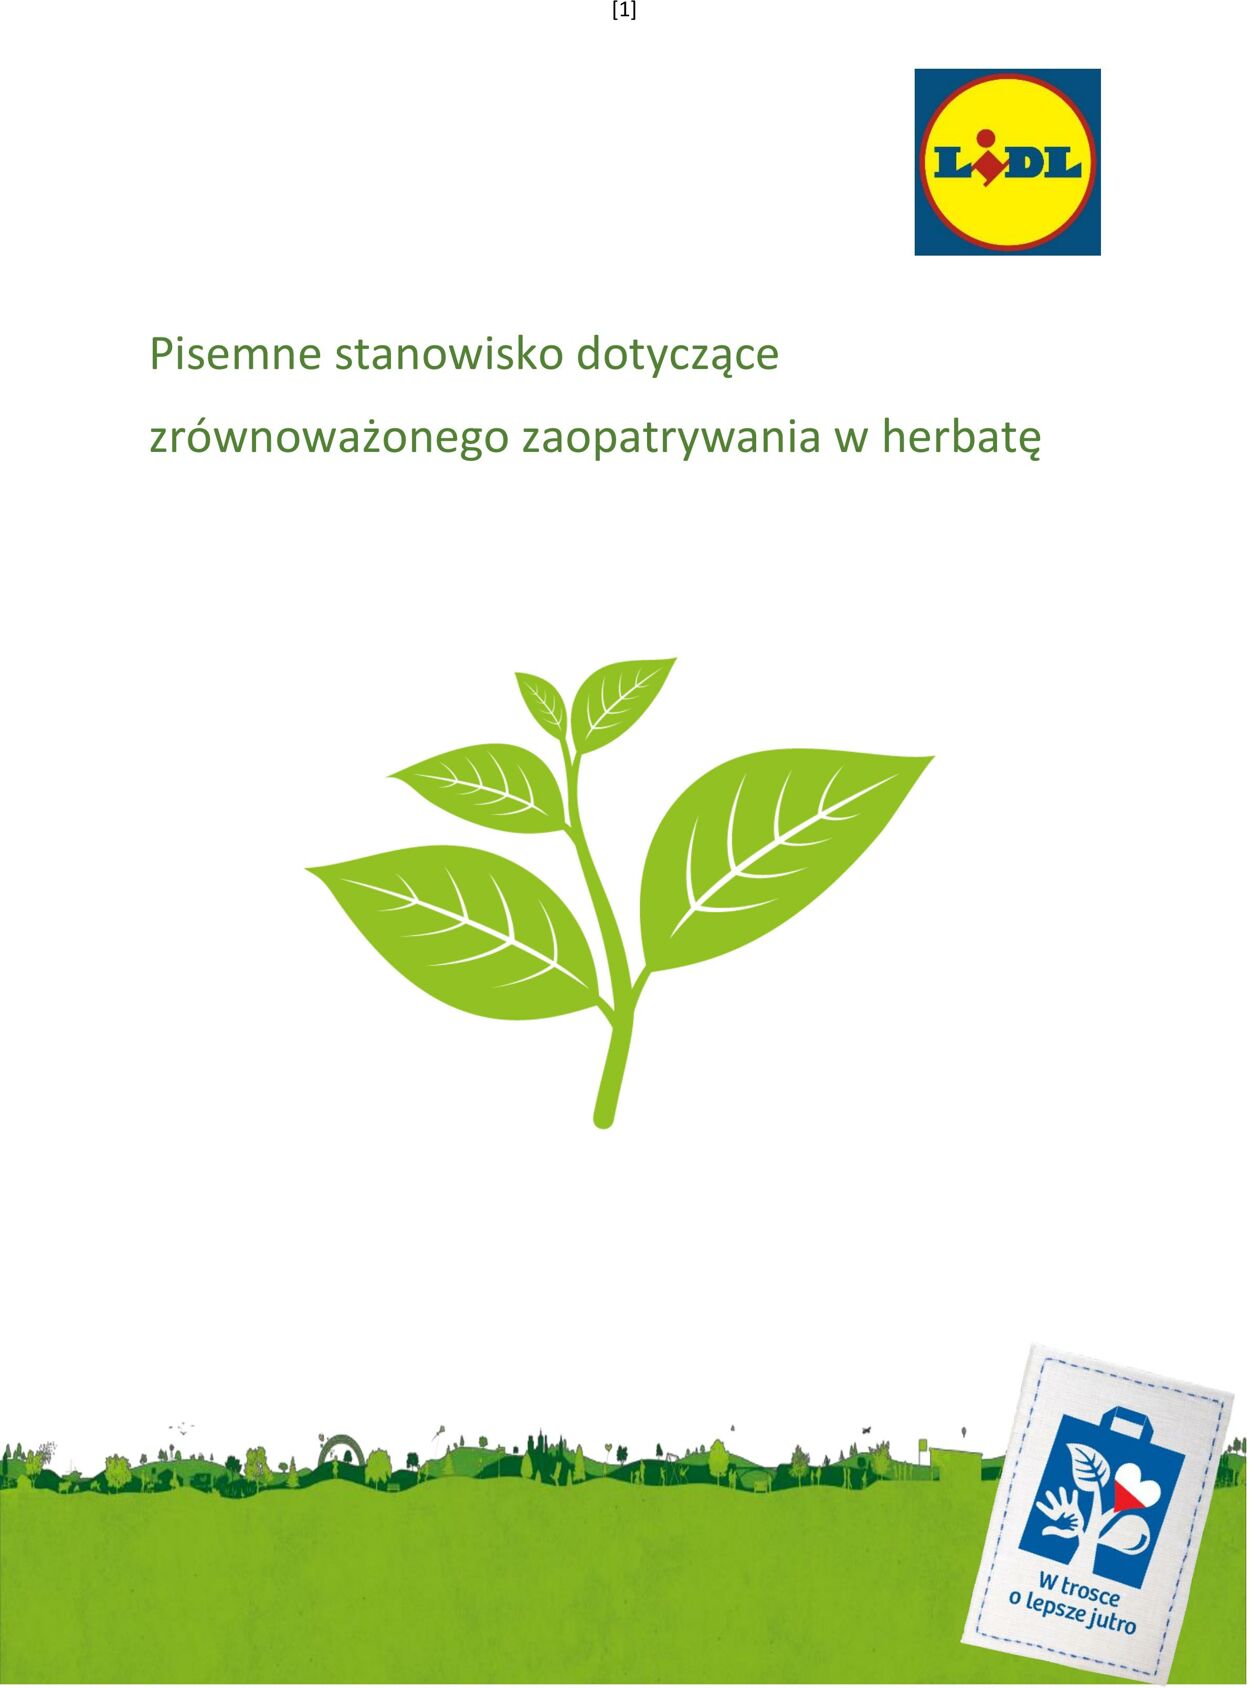 Gazetka Lidl - Stanowisko dotyczące zrównoważonego zaopatrywania w herbatę 1 sty, 2019 - 31 gru, 2030